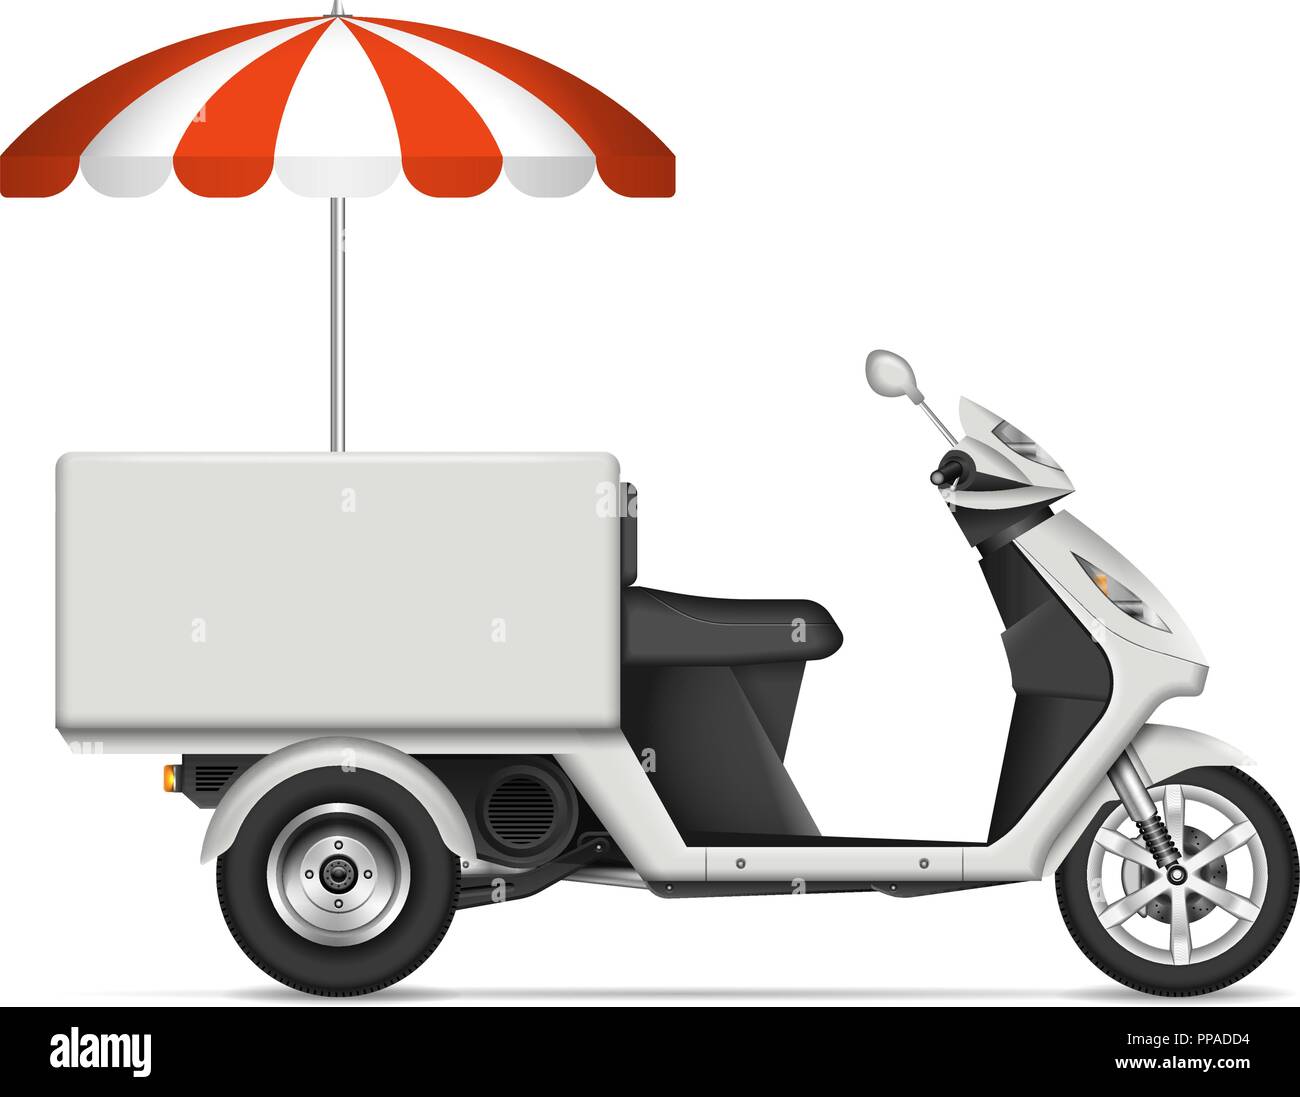 Essen scooter Profil anzeigen auf weißem Hintergrund für Fahrzeug Branding, Corporate Identity. Alle Elemente der Gruppen auf separaten Ebenen für einfache Bearbeitung Stock Vektor